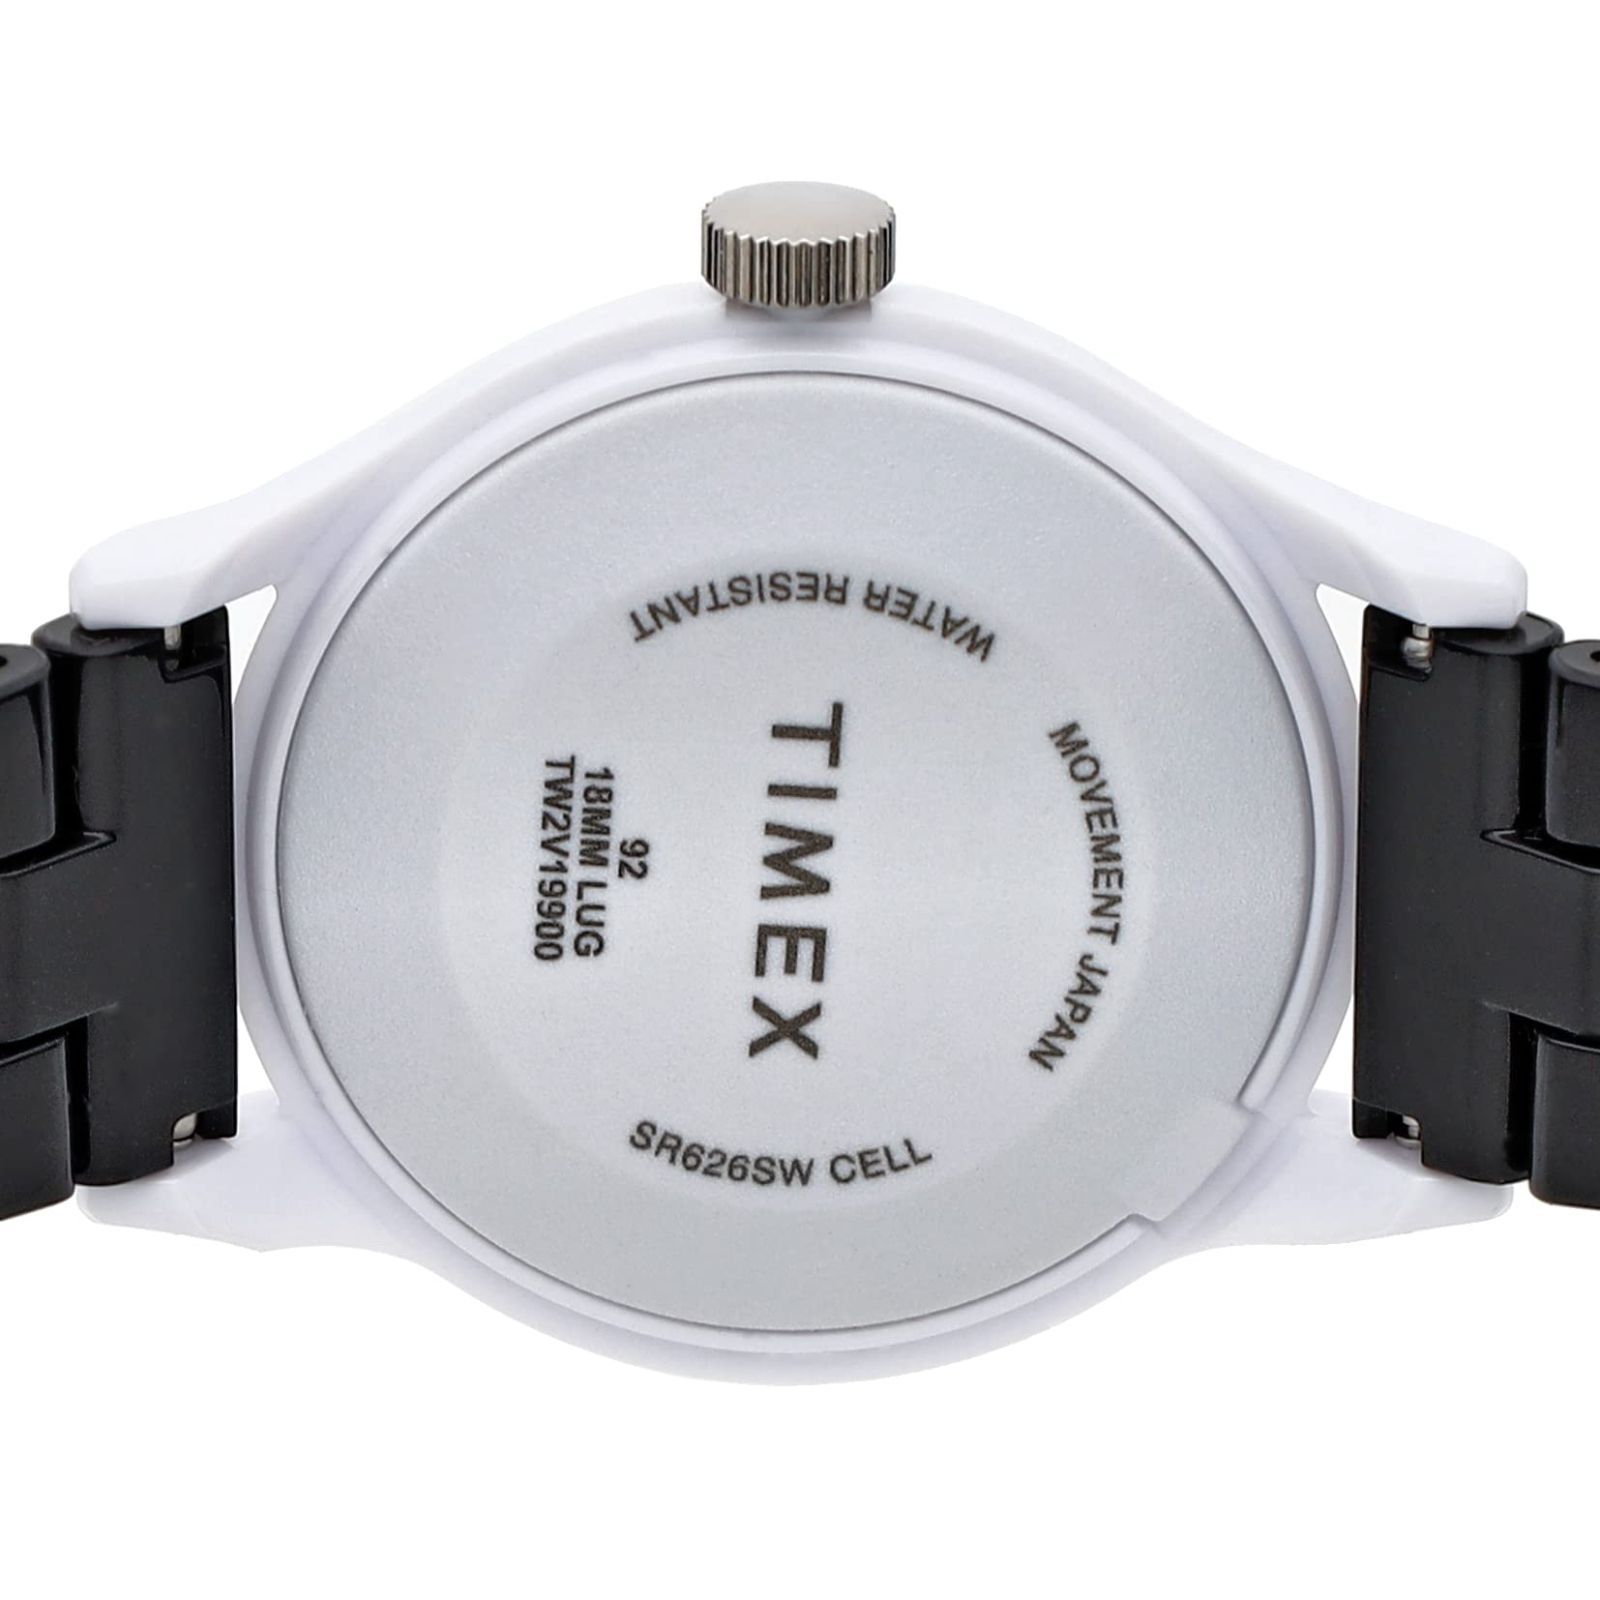 【新着商品】コレクション ブラック タイル 文字盤 キャンパー レジン オリジナル クォーツ Collection Quartz TILE Classic 36mm Camper America original アメリカ タイメックス Watch 腕時計 T